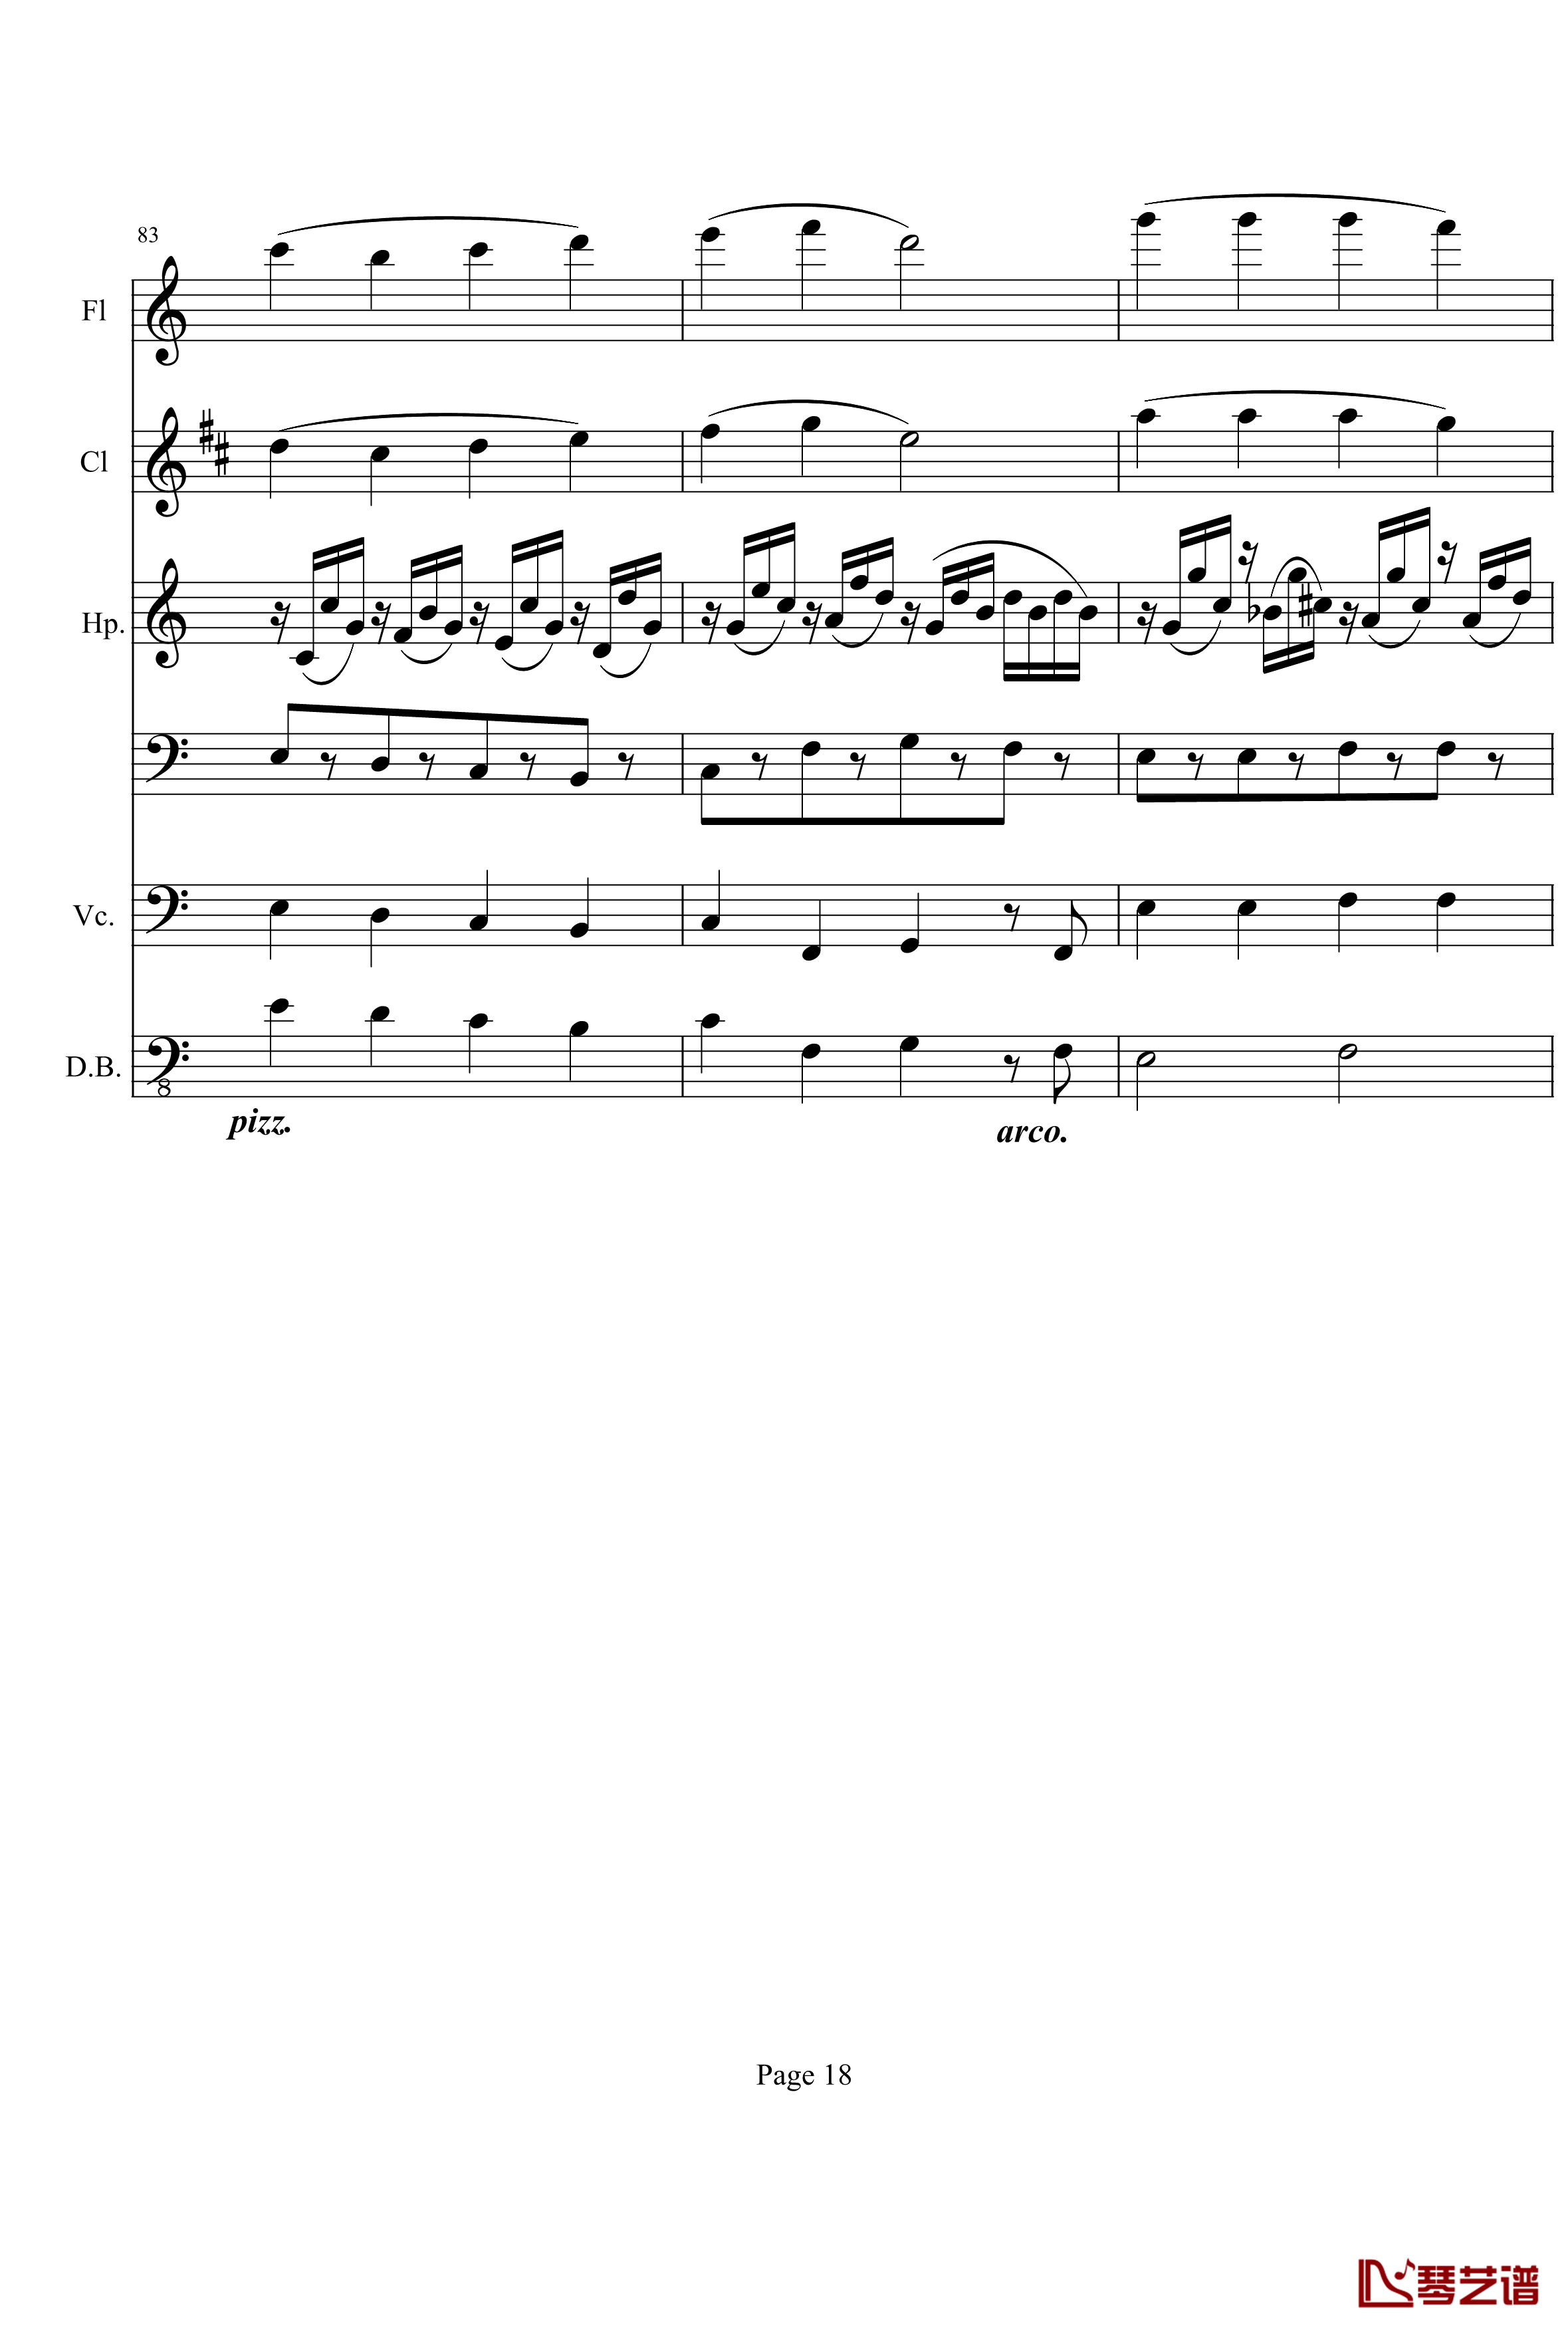 奏鸣曲之交响钢琴谱-第10首-Ⅱ-贝多芬-beethoven18